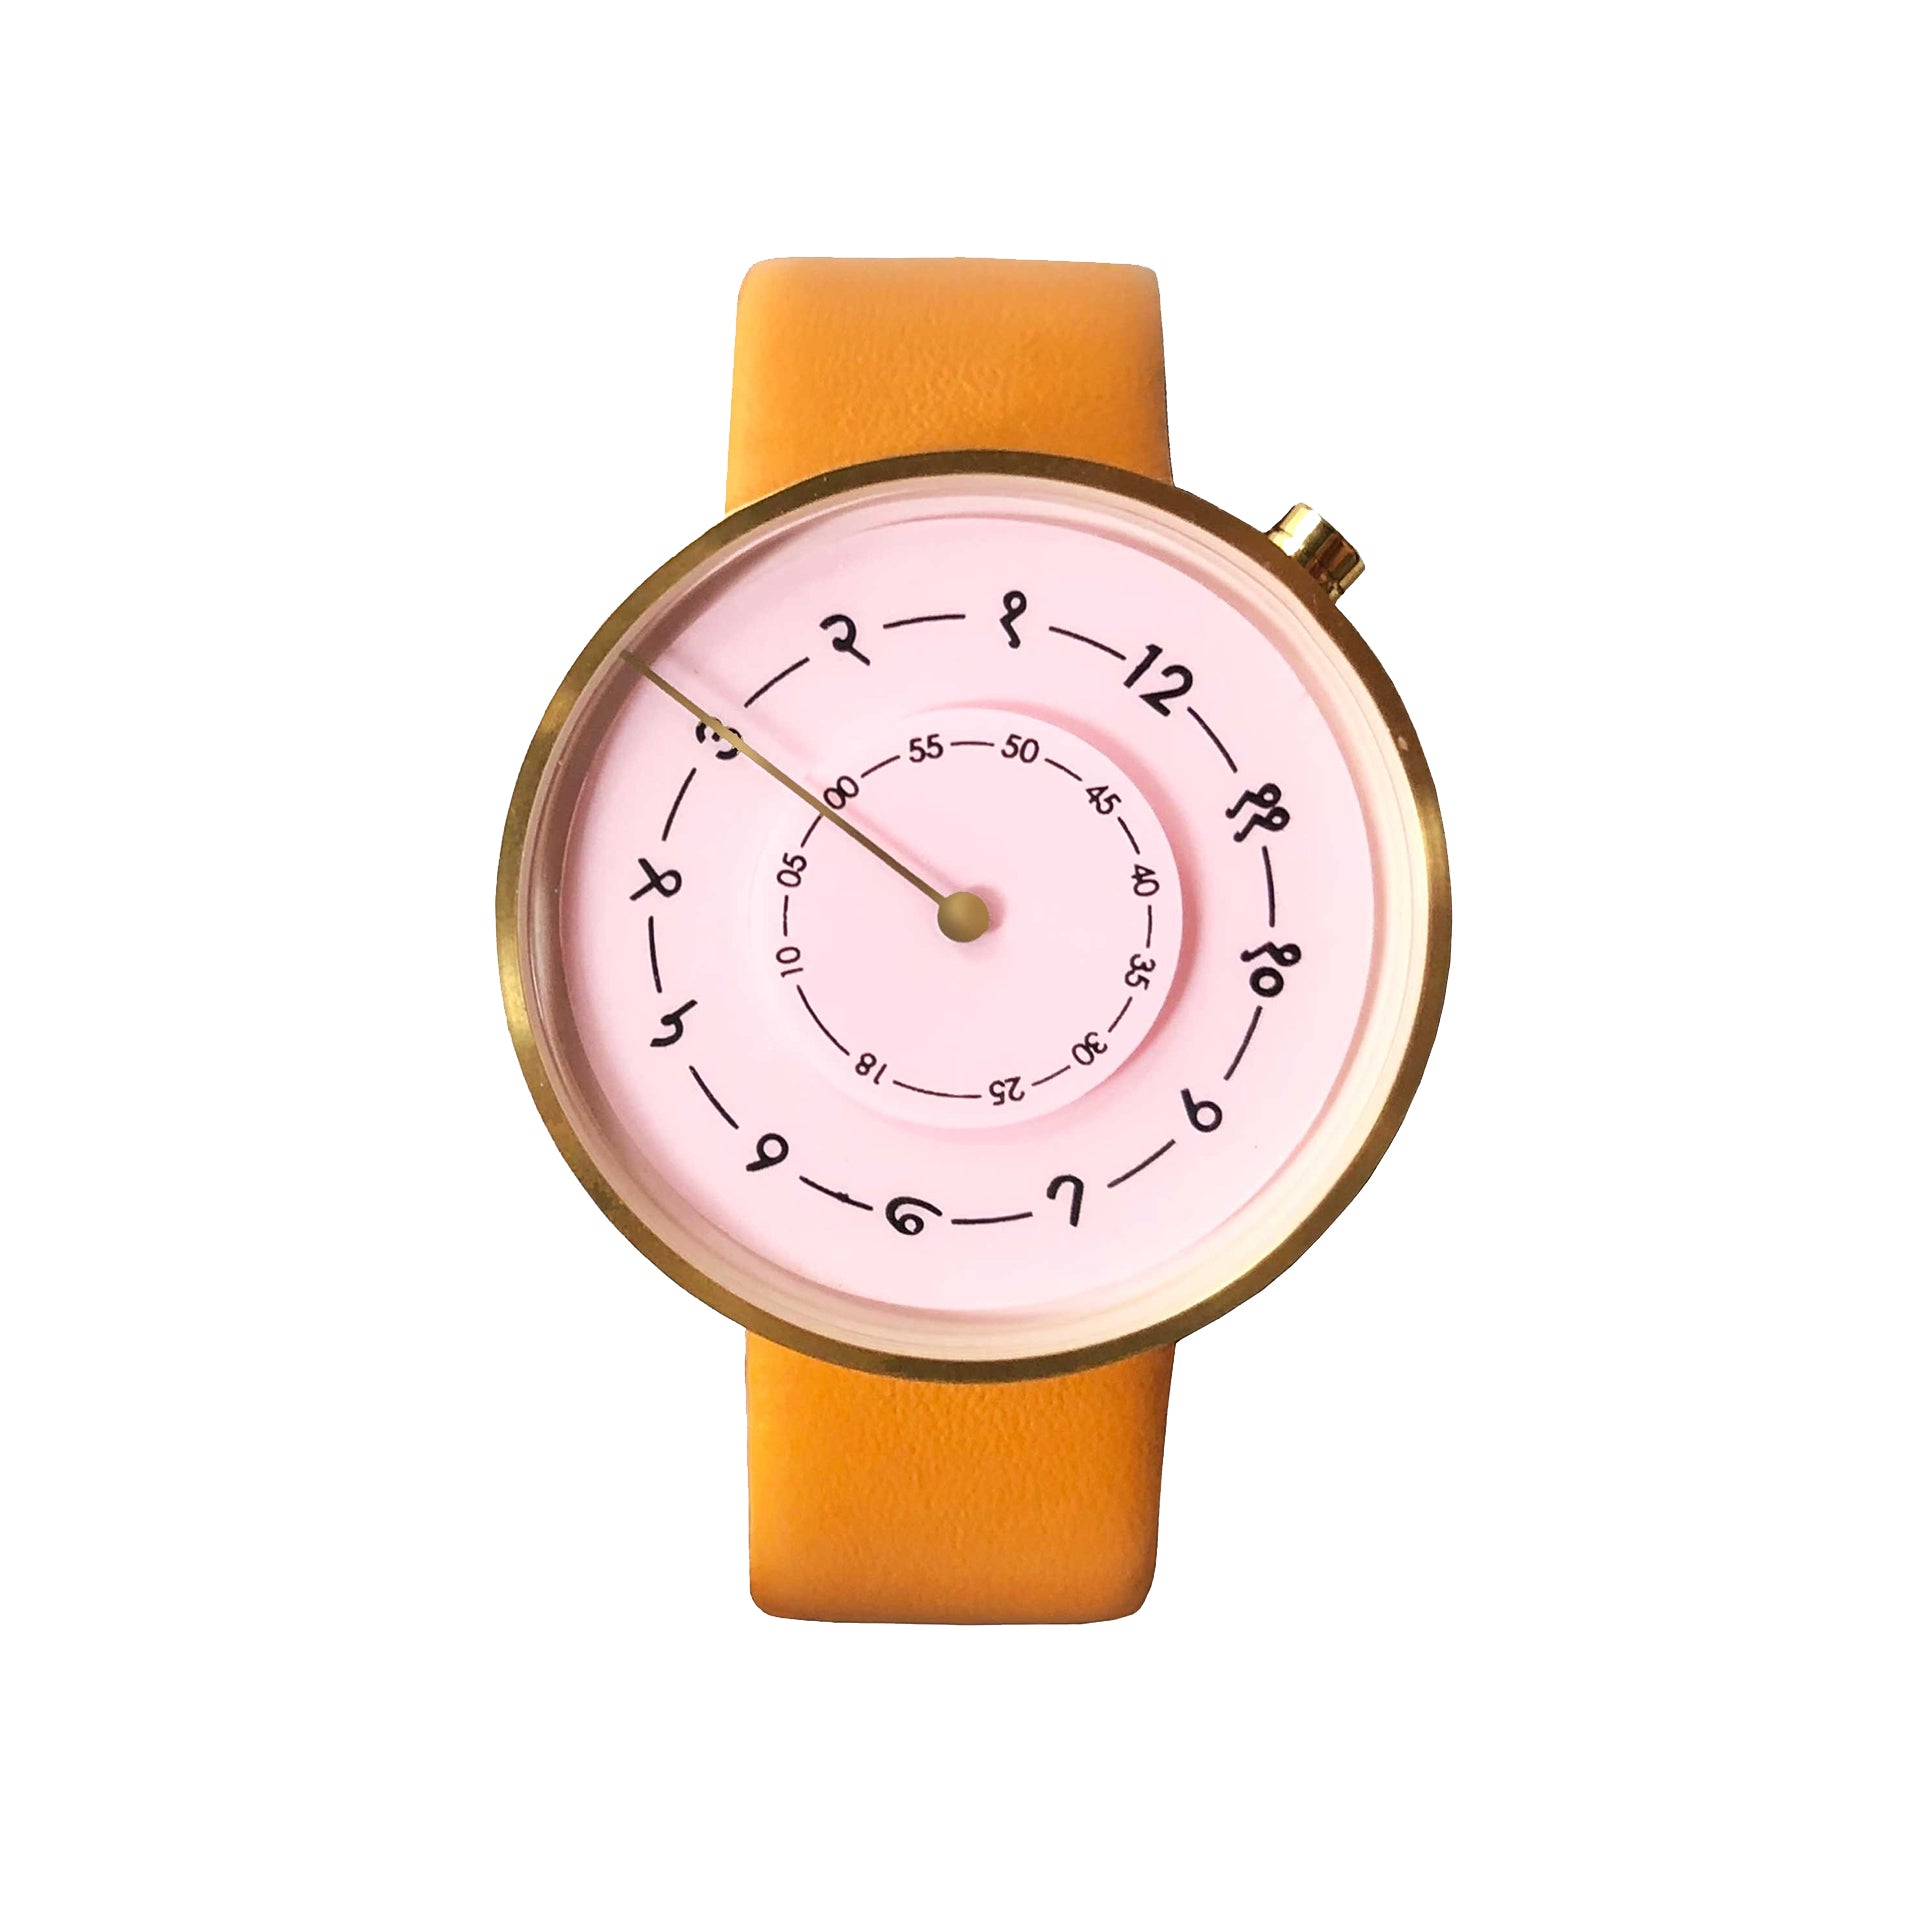 HMT Janata Beautiful Wrist Watch D-519